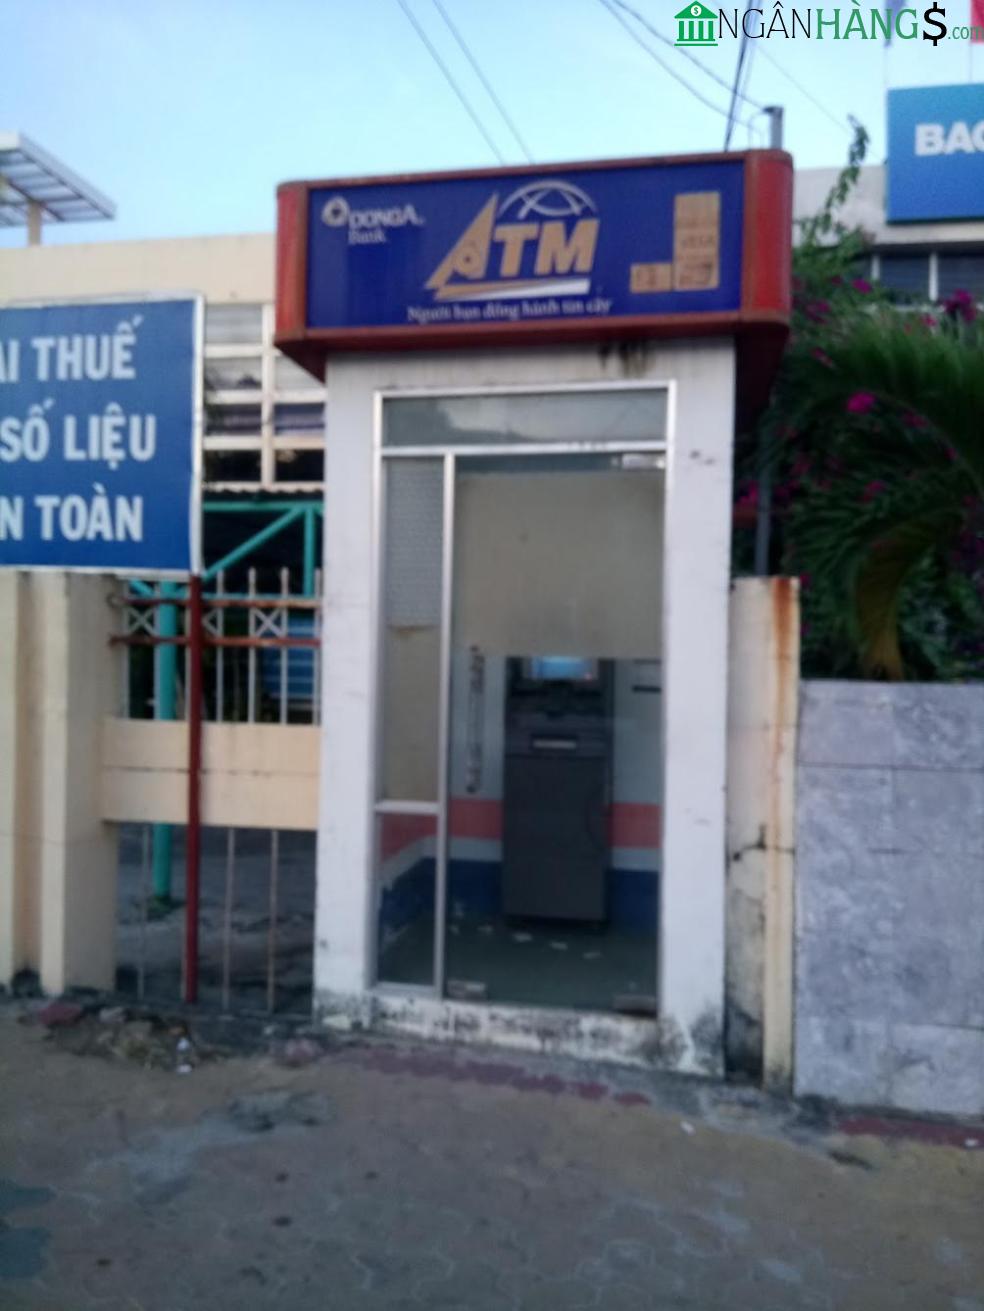 Ảnh Cây ATM ngân hàng Đông Á DongABank Công ty May Hồng Việt 1